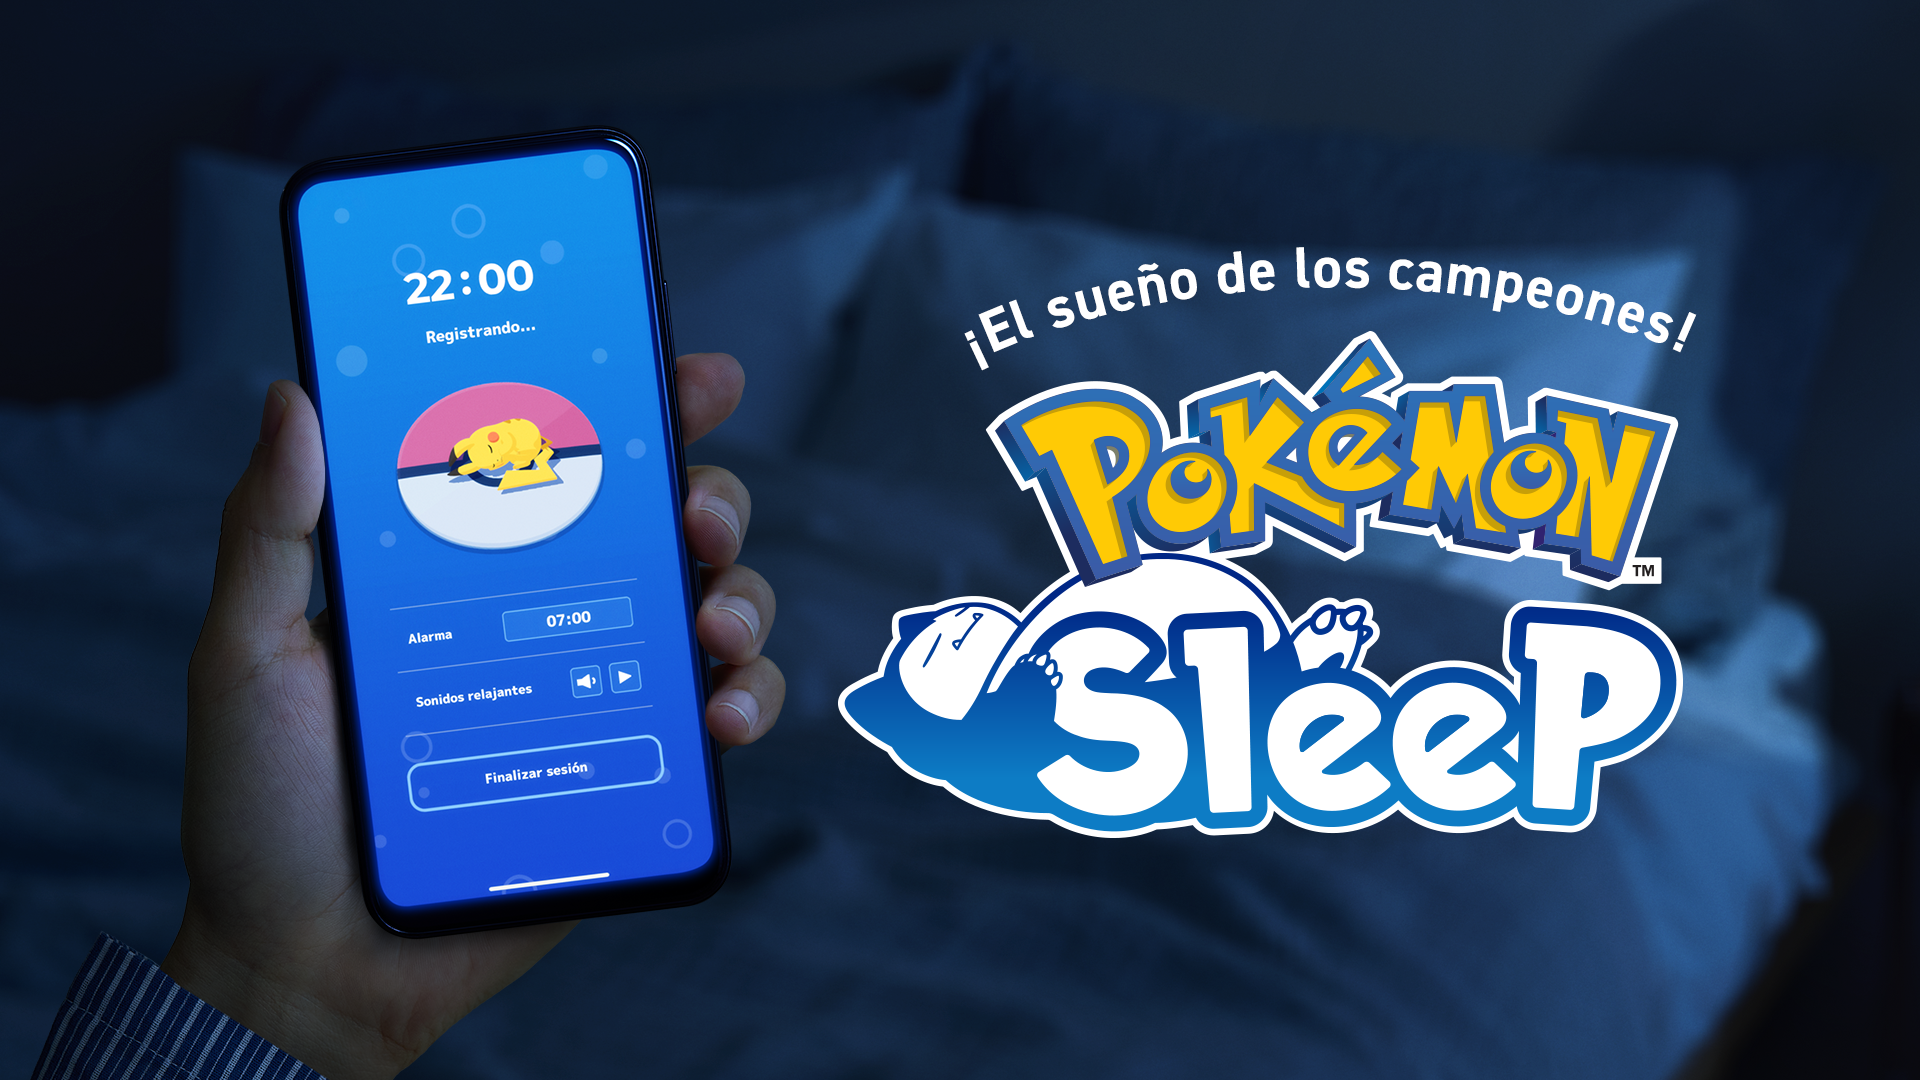 Pokémon Sleep ha revelado sus futuros planes de desarrollo y añadirá nuevos Pokémon, funciones y más image